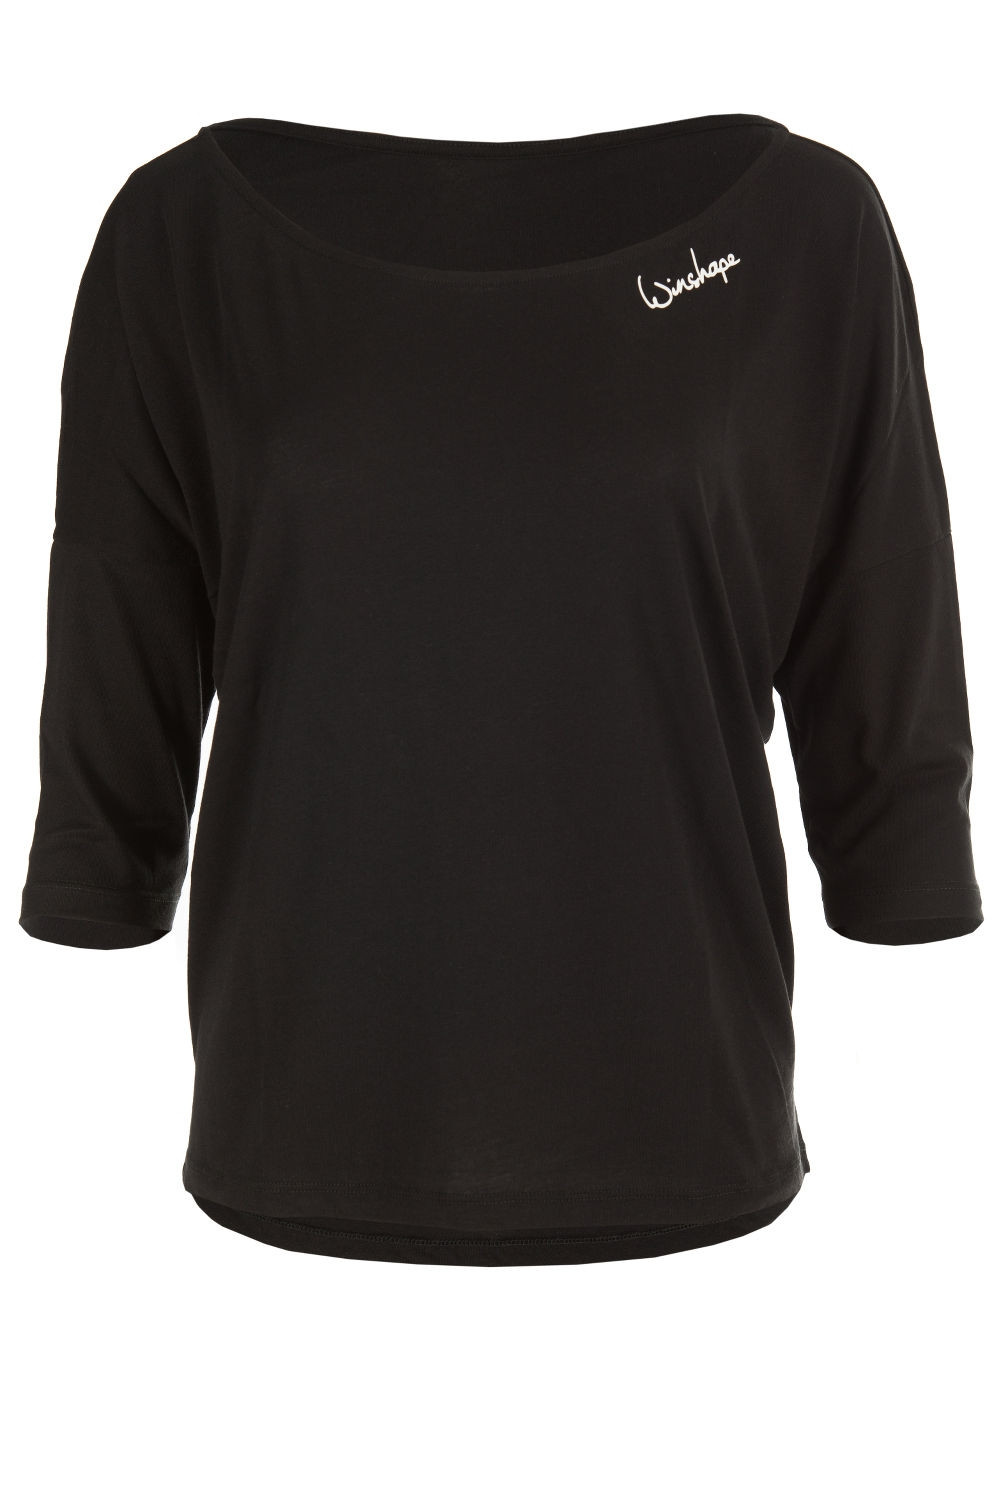 Dance Ultra Shirt Style leichtes MCS001, Modal-3/4-Arm schwarz, Winshape